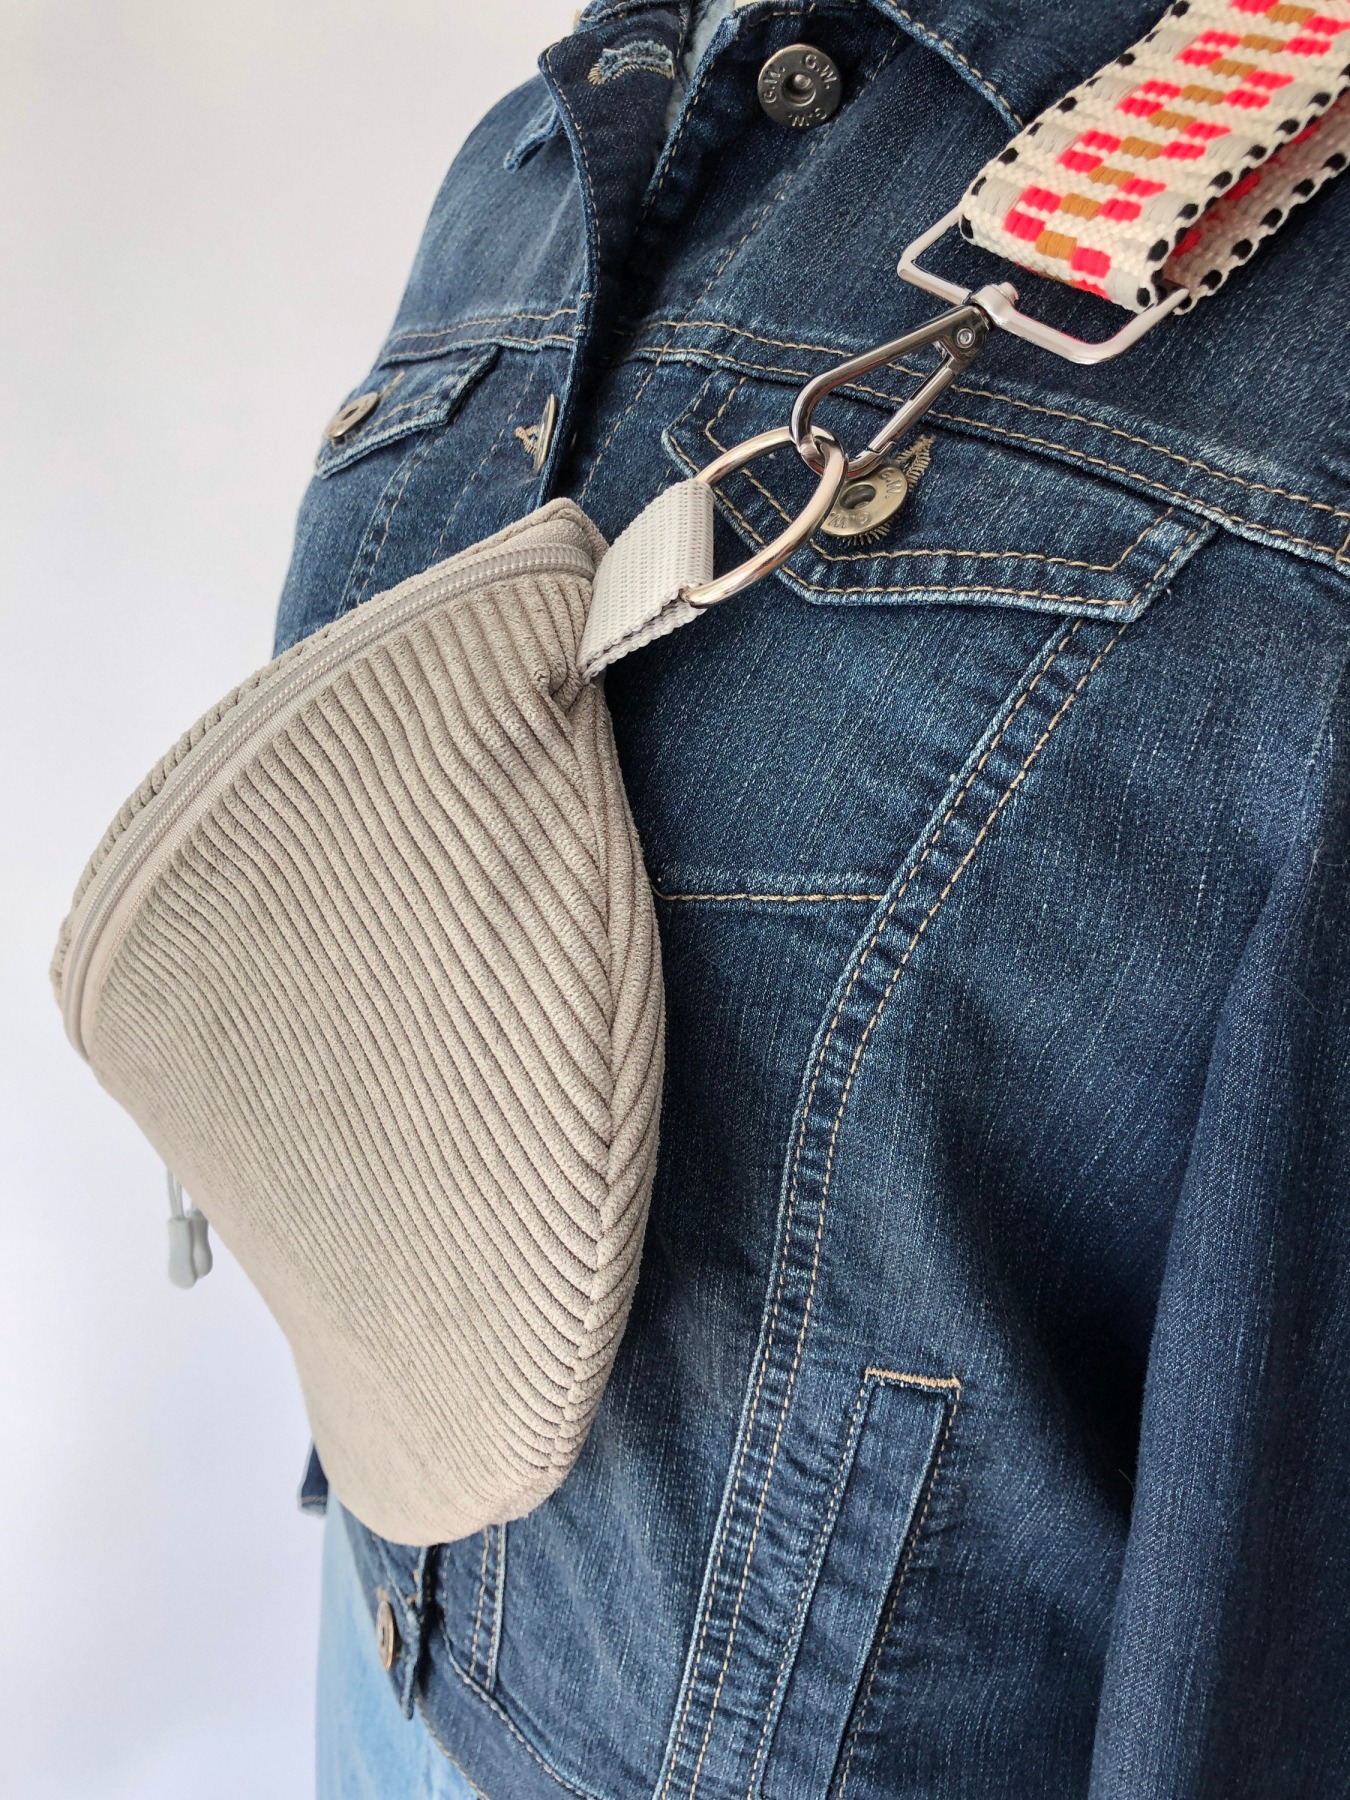 Bauchtasche XL Crossbag Cord graubeige Hipbag leicht und praktisch Kord Cordstoff grau beige mit